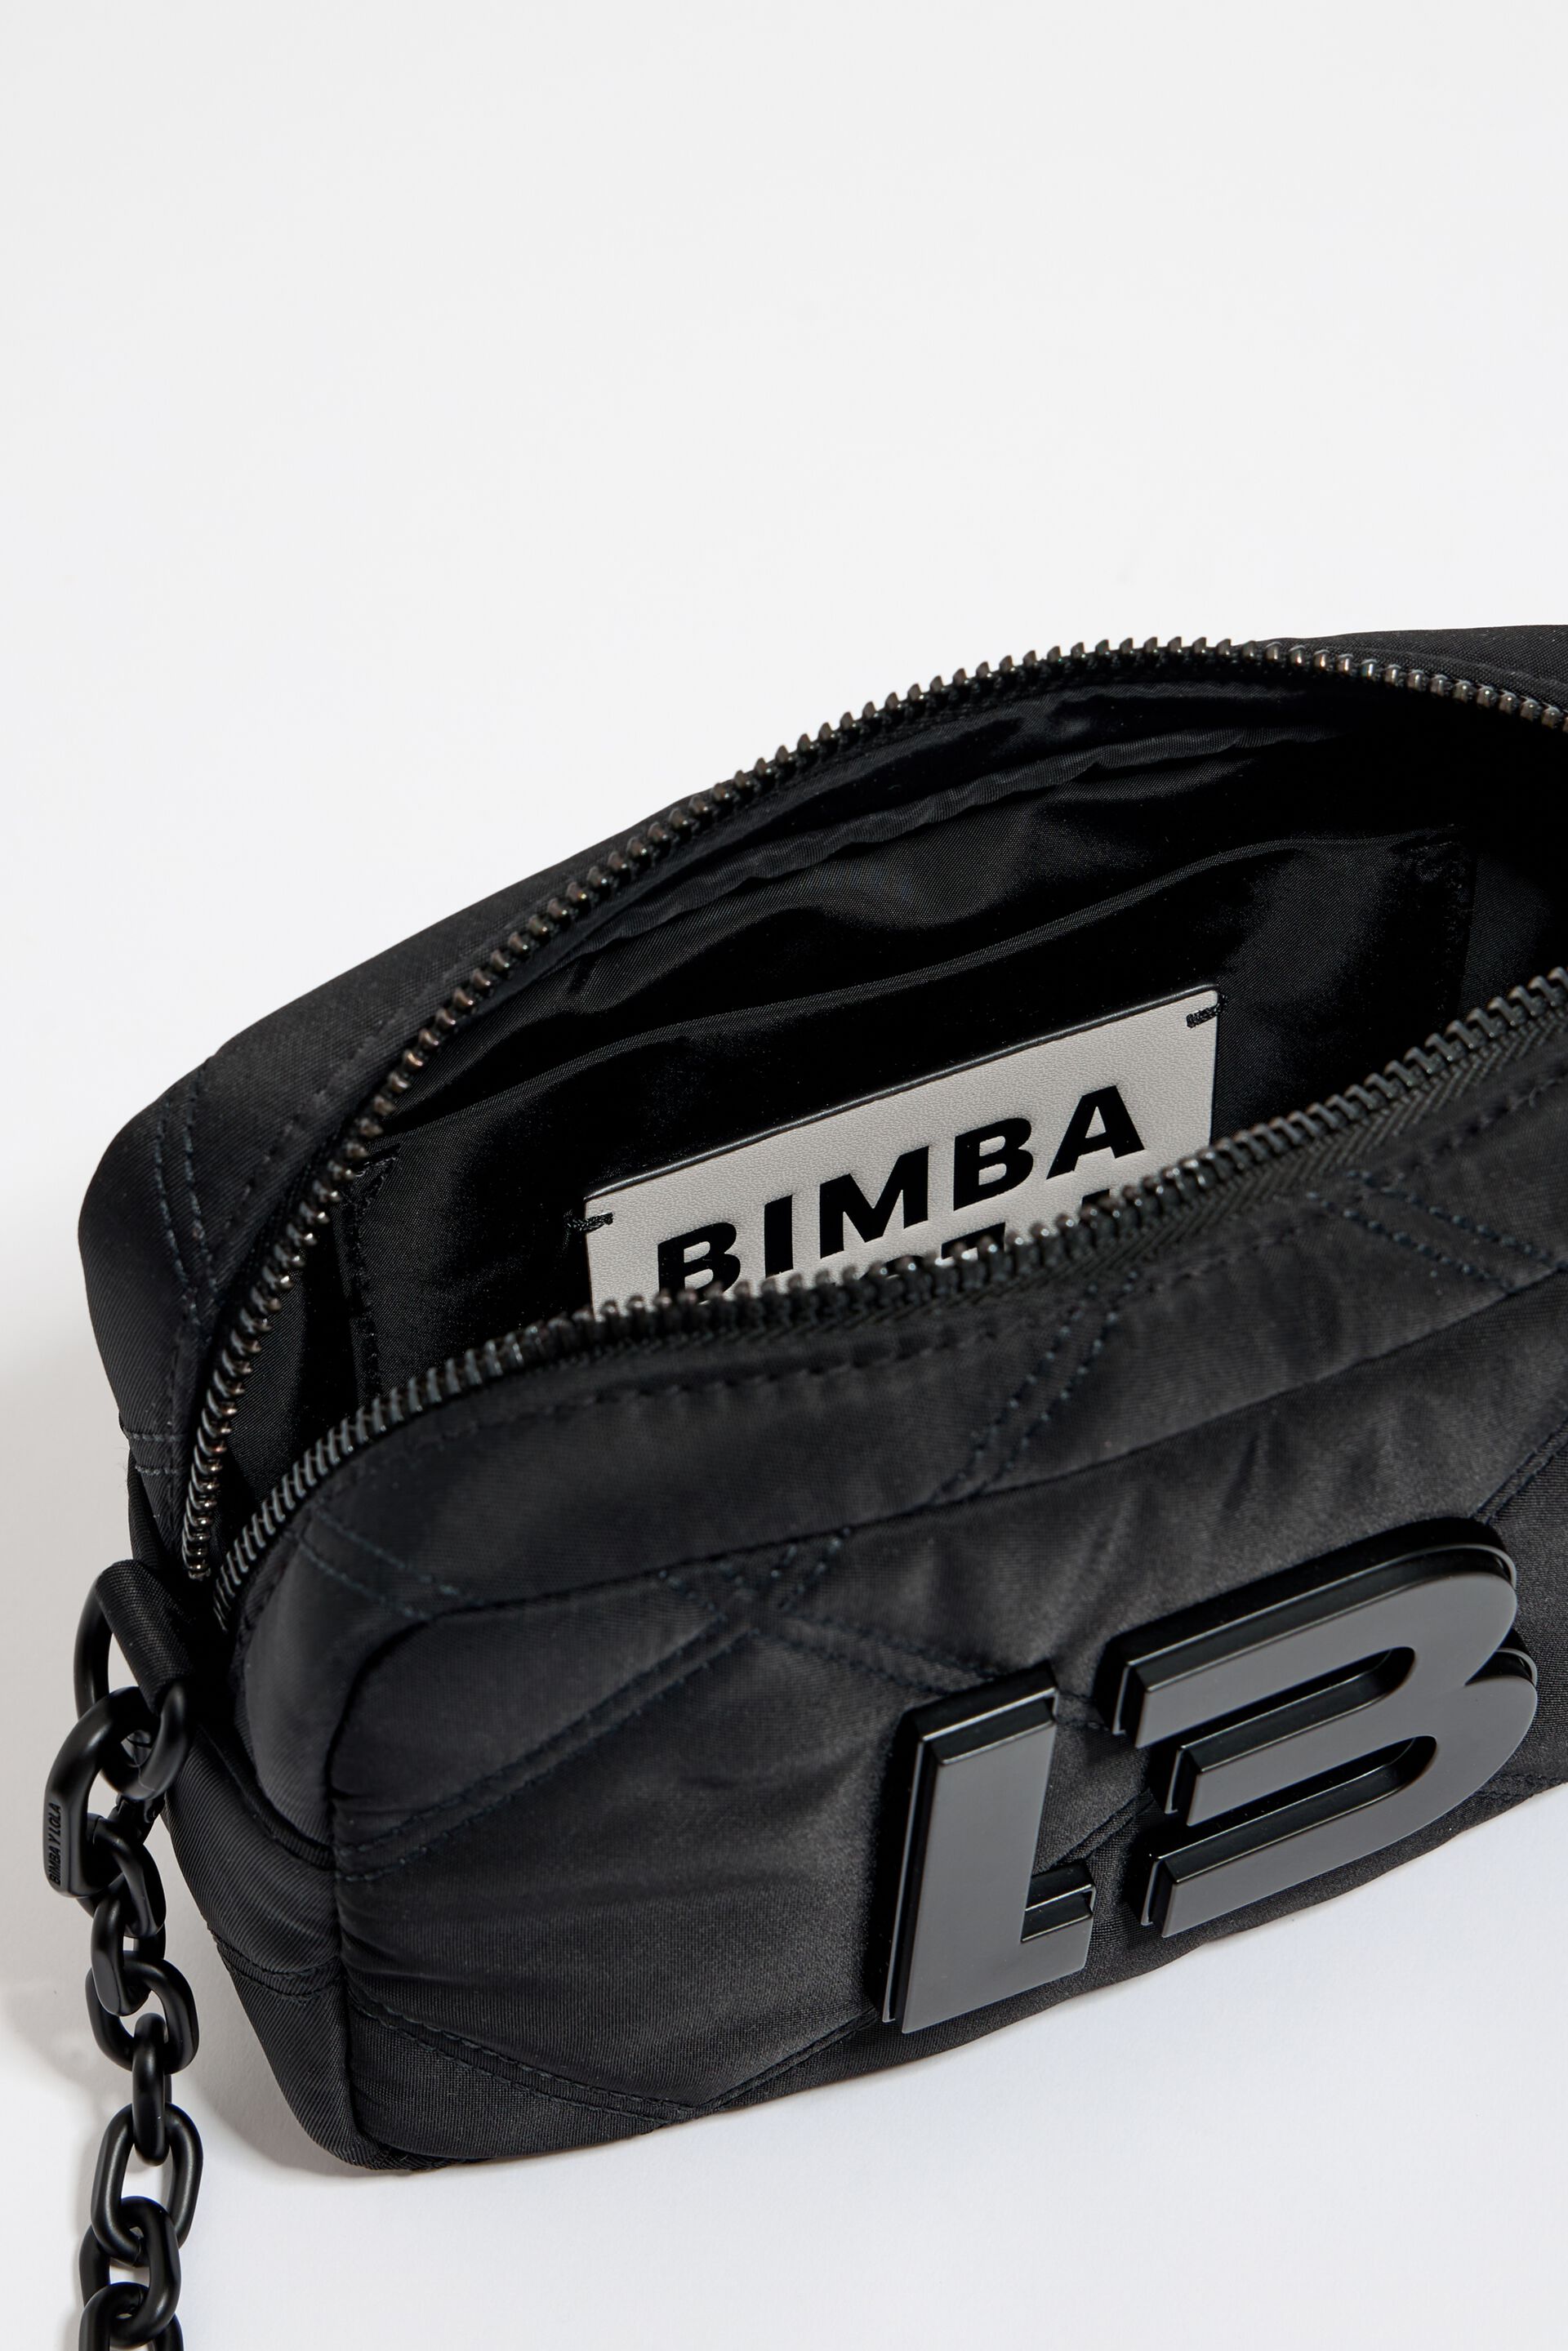 Bimba Y Lola Padded Nylon Crossbody Bag Black – Balilene